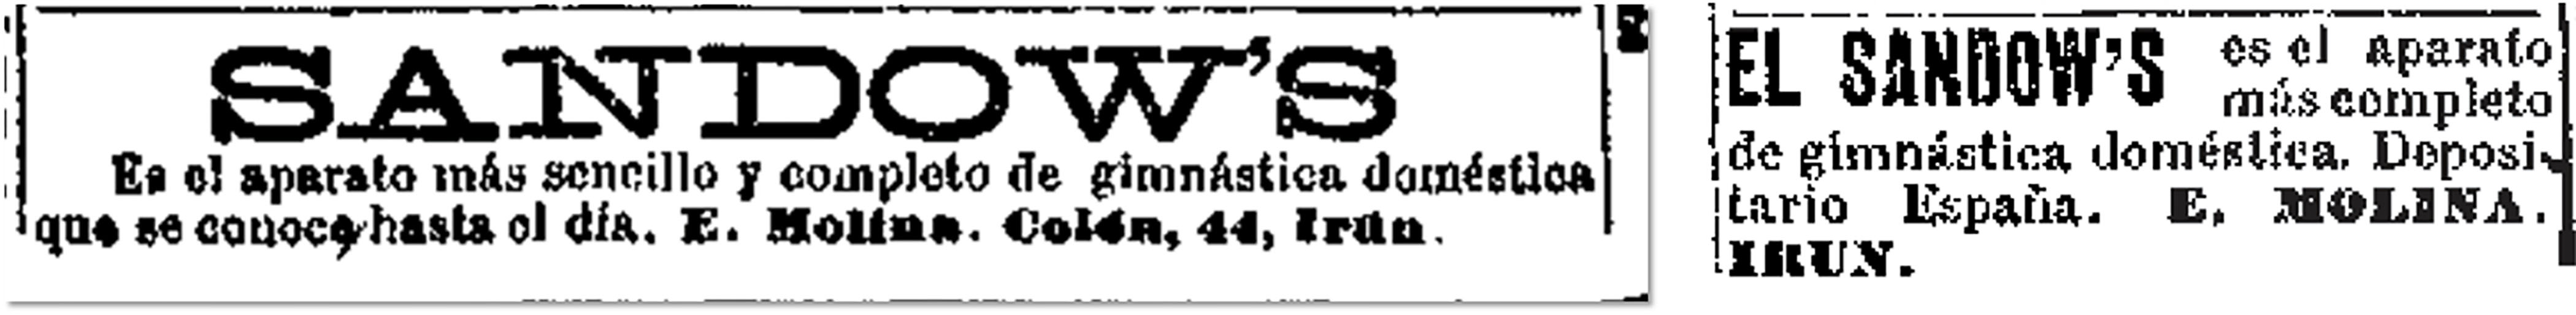 El Liberal, 11 de enero de 1900, p. 4; 15 de septiembre de 1900, p. 4